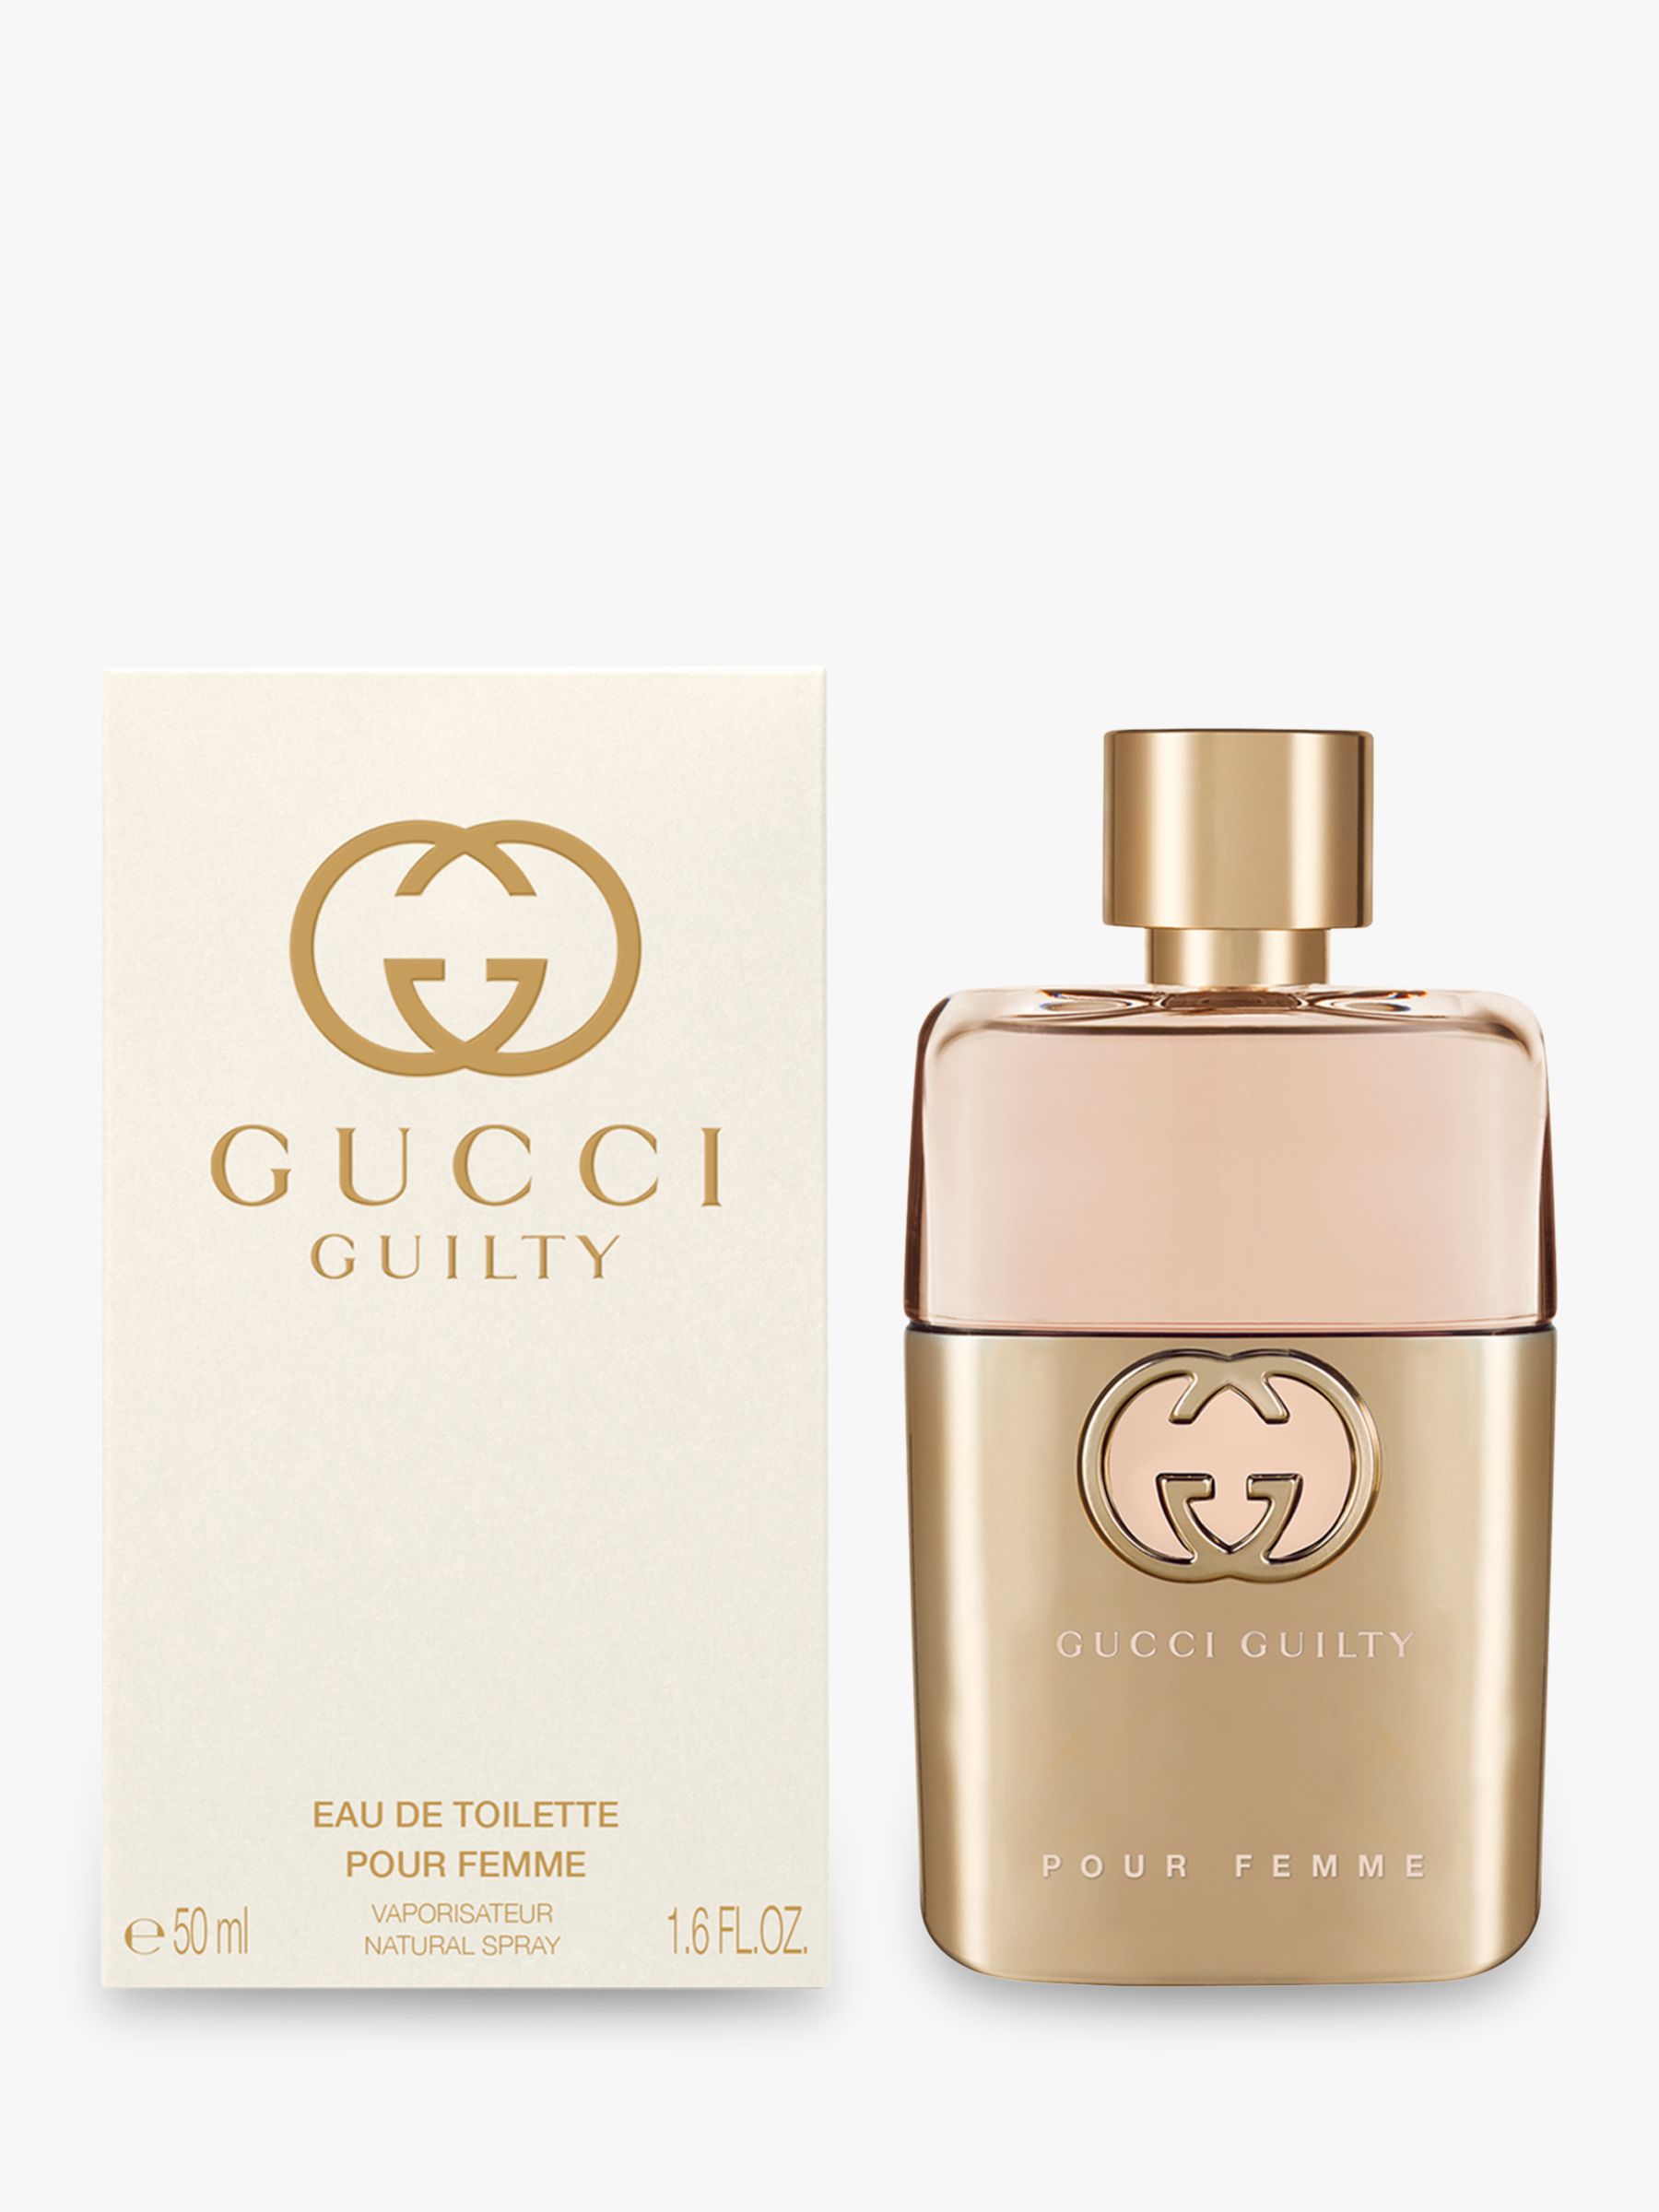 Gucci Guilty Eau de Parfum For Her, 50ml at John Lewis & Partners